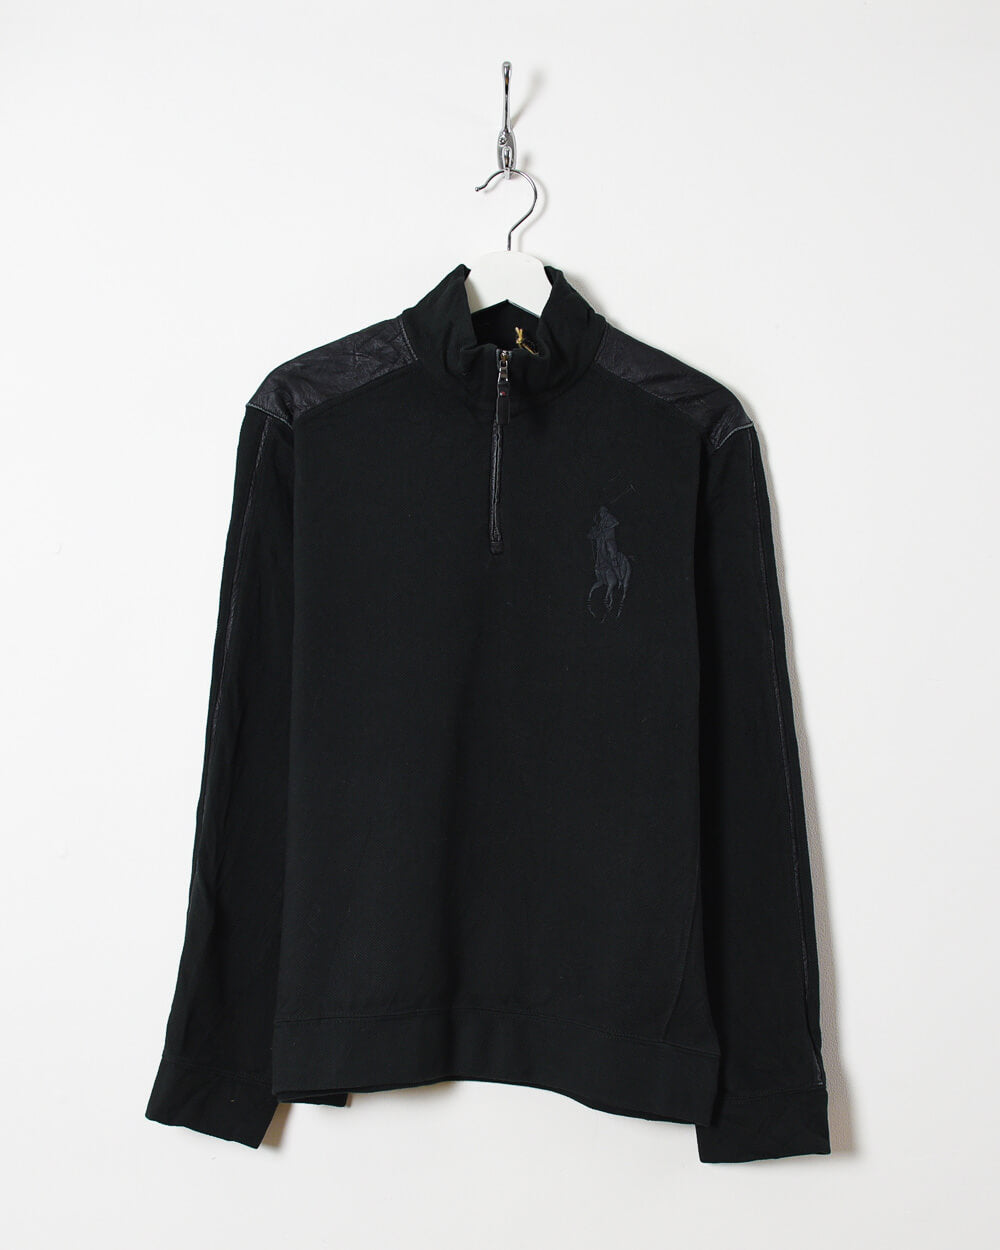 Black Ralph Lauren 1/4 Zip Sweatshirt - Medium